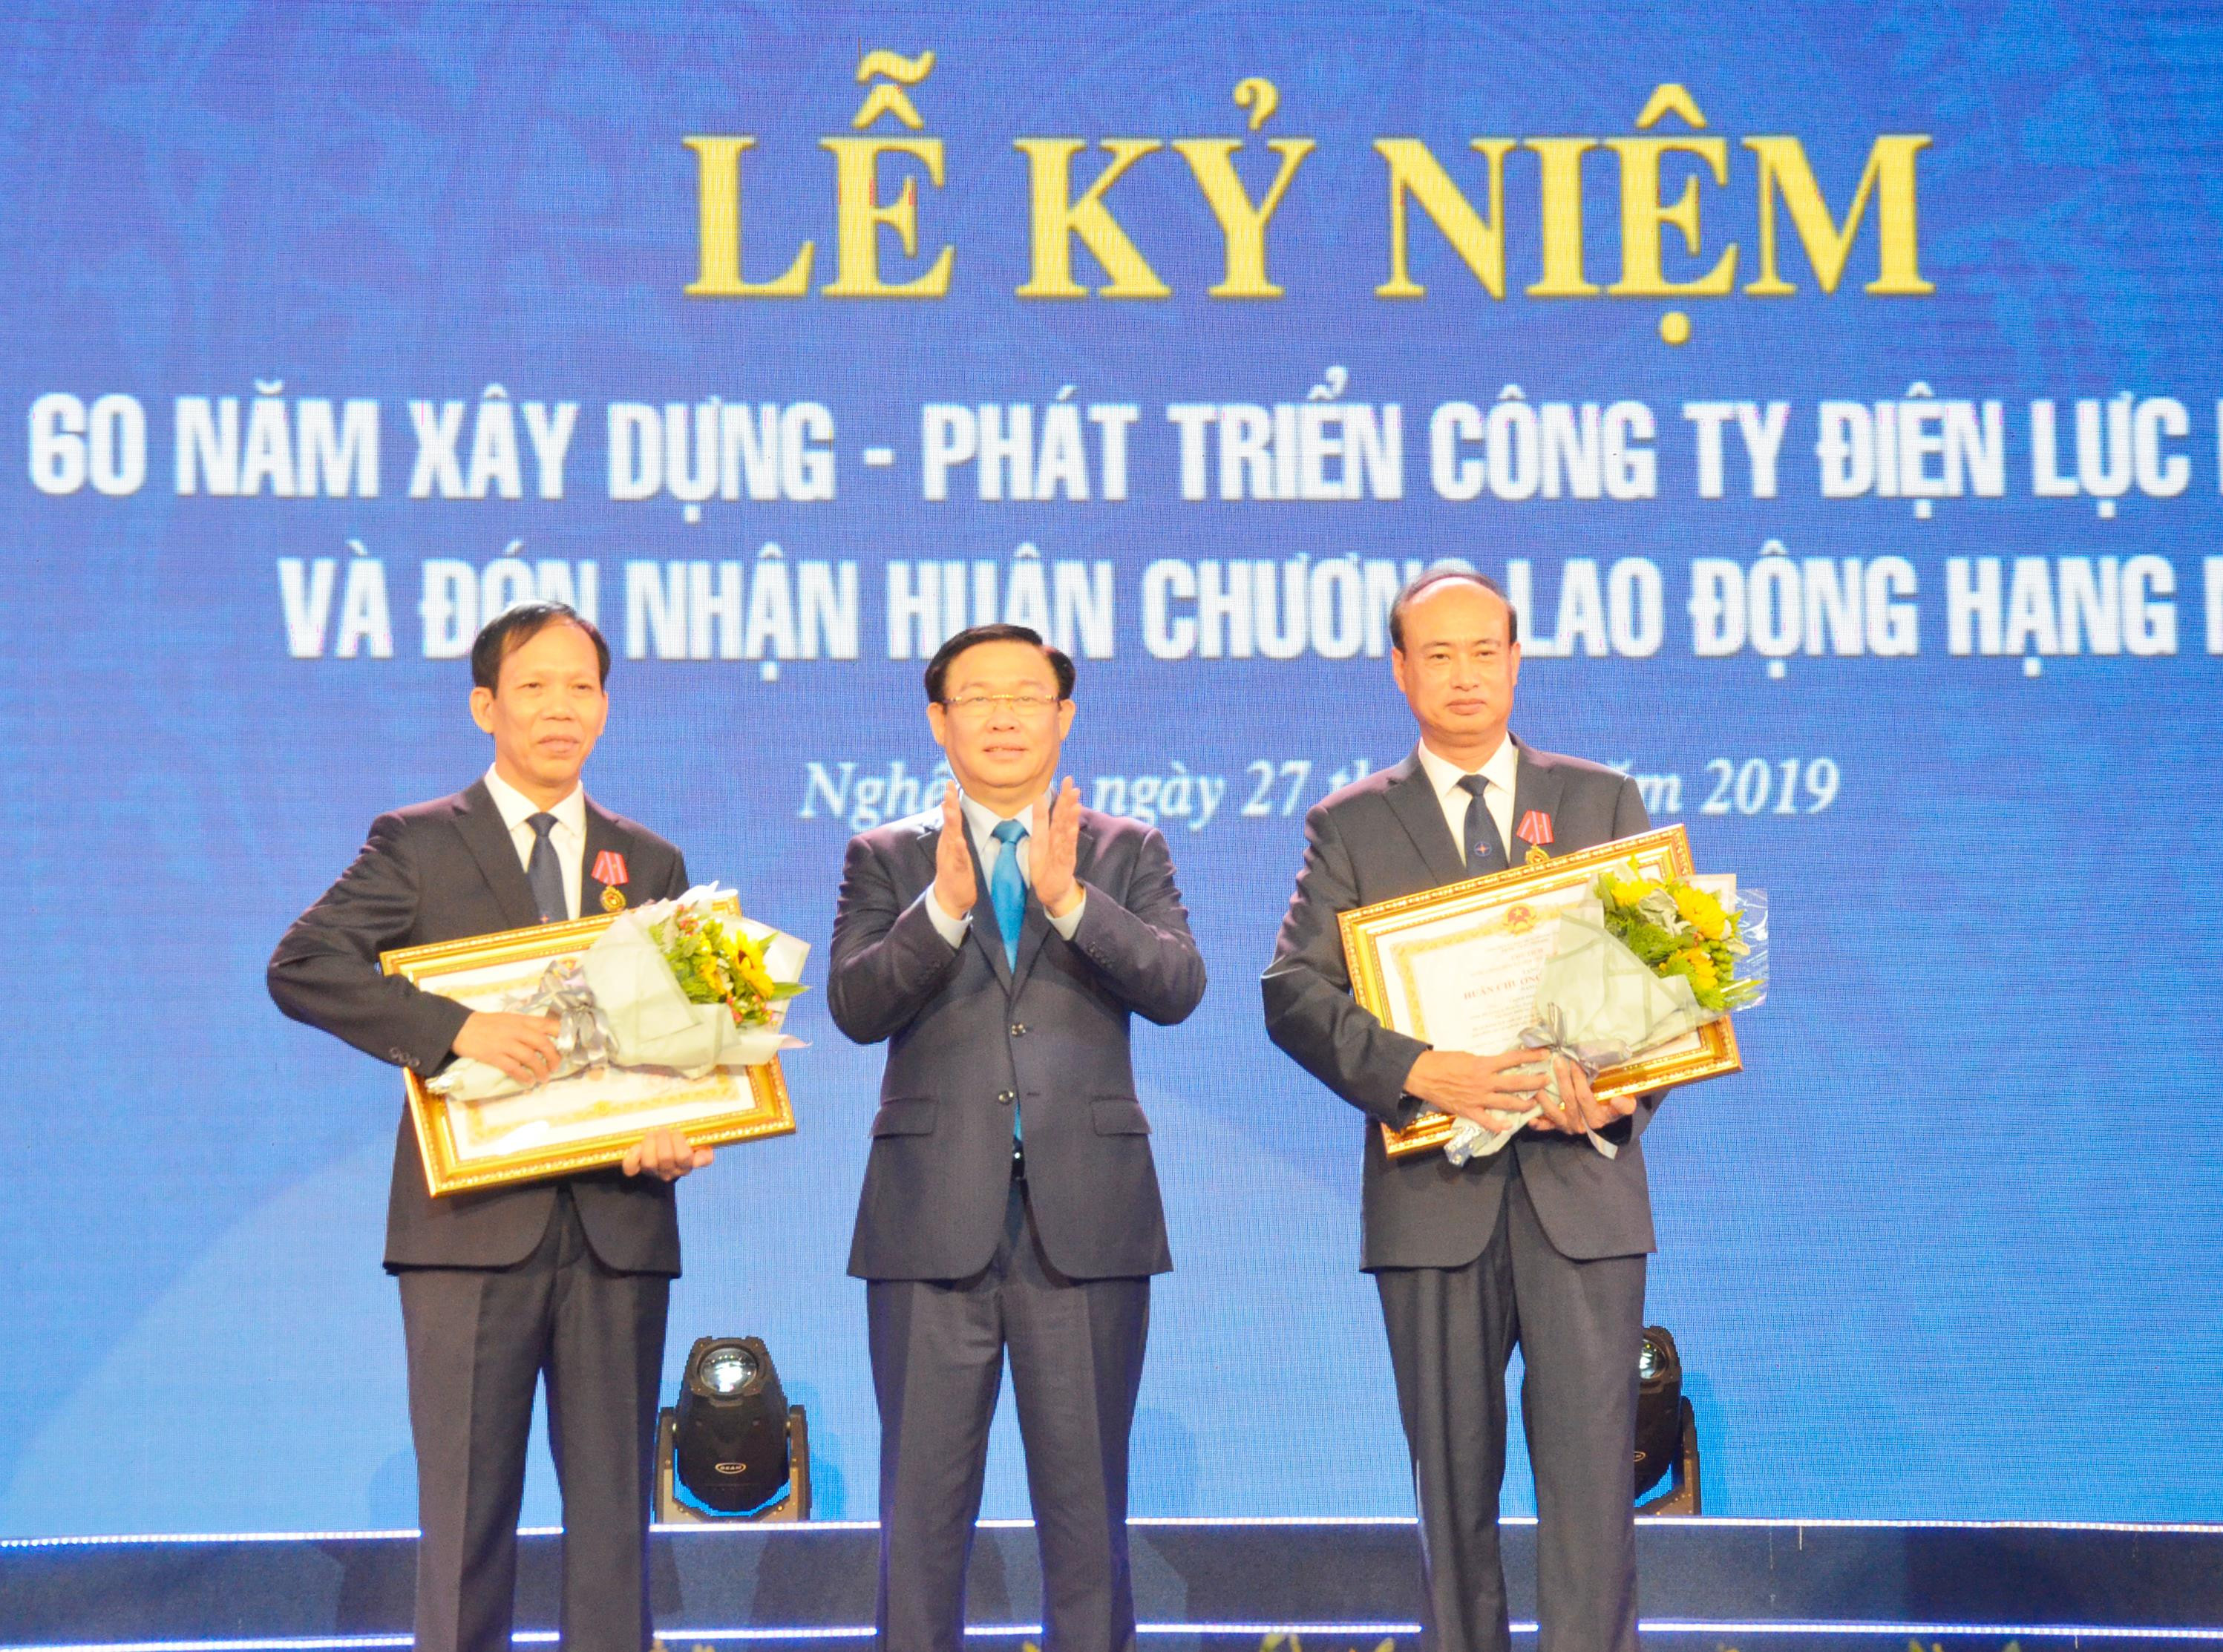 Phó Thủ tướng Vương Đình Huệ trao Huân chương 2 cá nhân của cho Công ty Điện lực Nghệ An. Ảnh: Thanh Lê